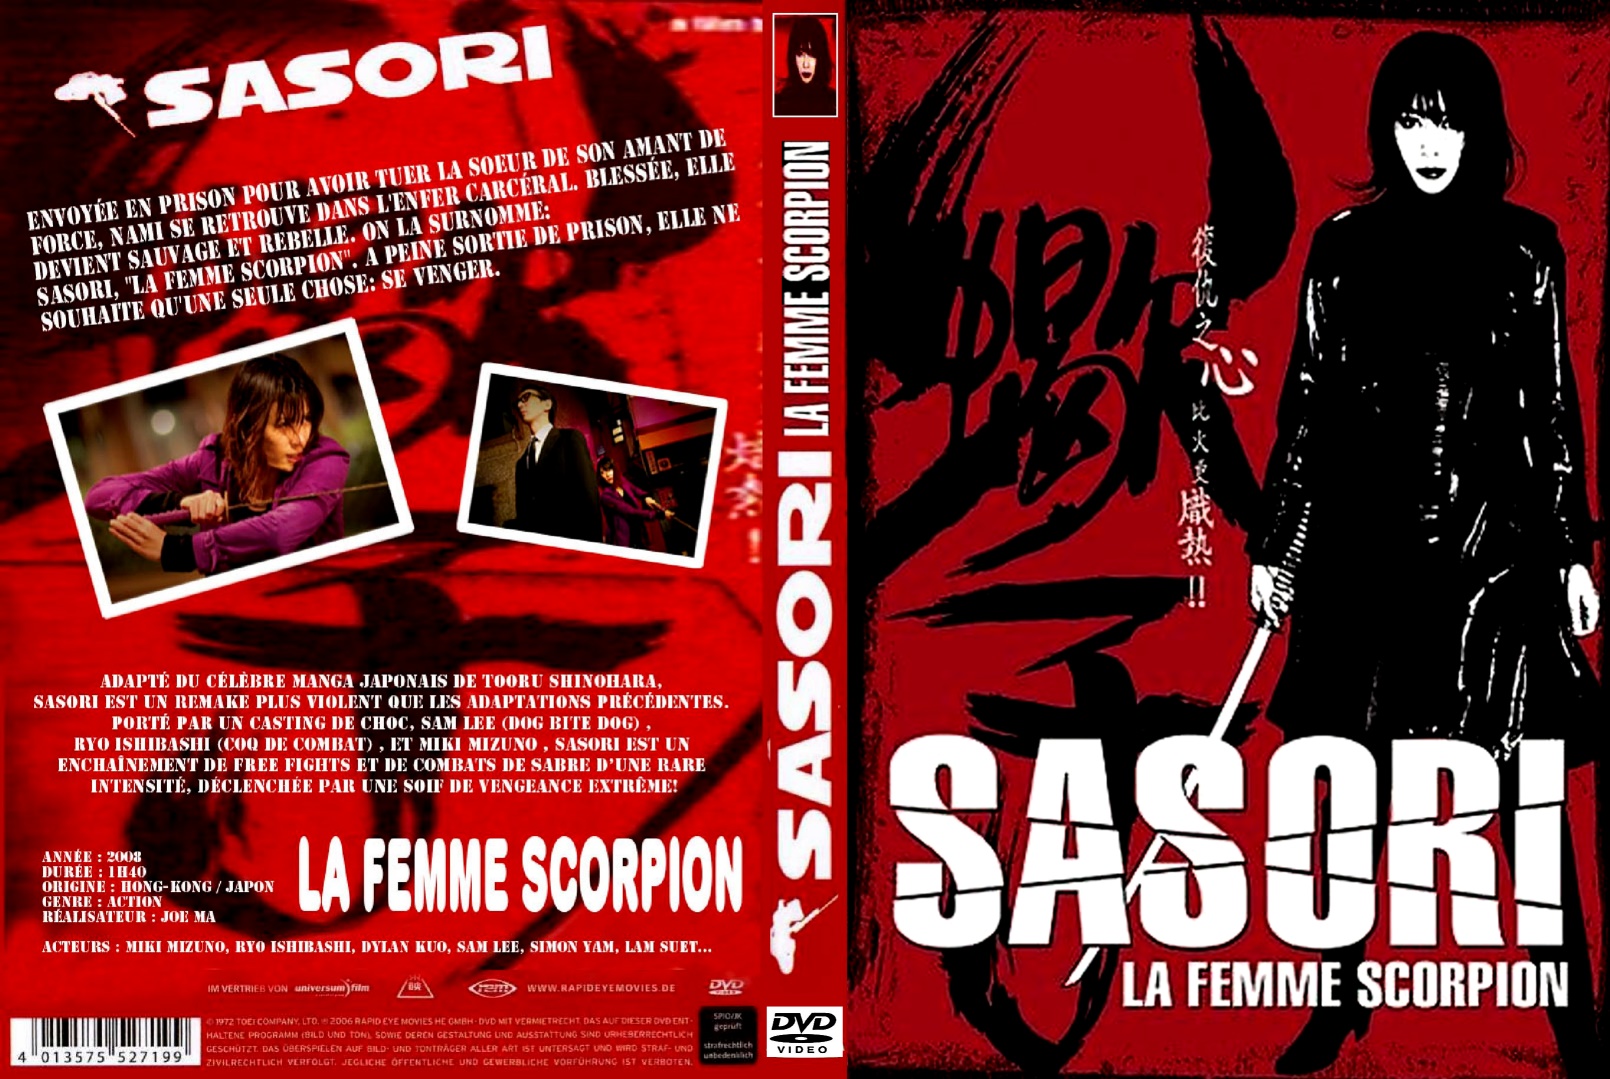 Jaquette DVD Sasori, la femme scorpion custom